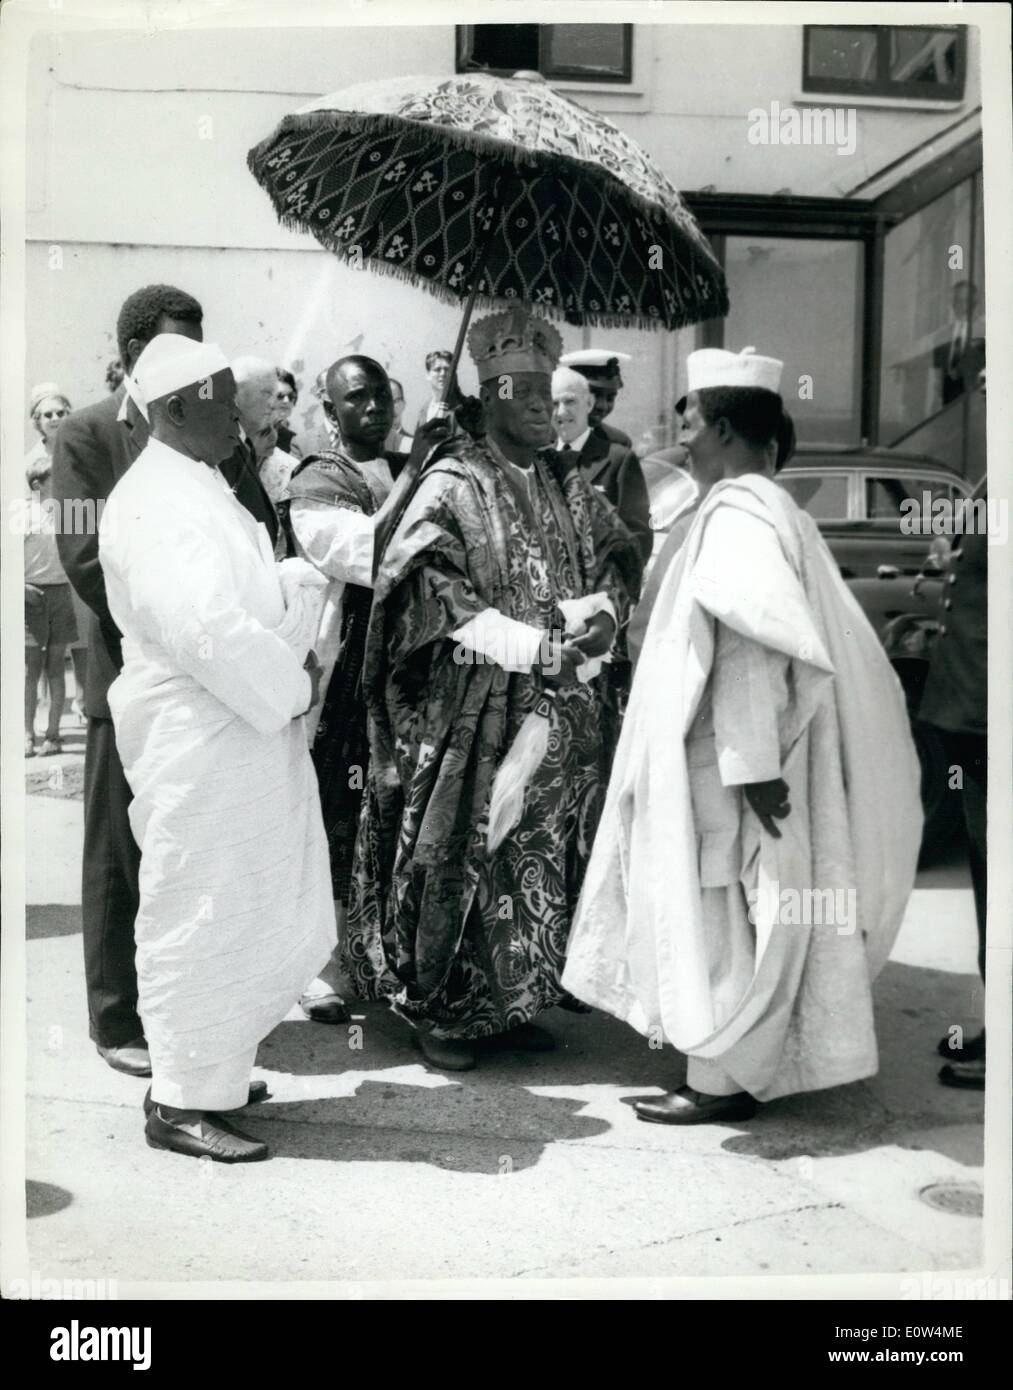 Juin 06, 1961 - Le Navire de la marine nigériane a lancé : H.M.N.S à Enugu, le premier navire à être spécialement construit pour la Royal Navy nigériane a été lancé aujourd'hui à Gosport par Mme Flora Azikiwe, épouse du gouverneur général de la Fédération. Un bateau de la défense de la mer, l'Enugu, va chasser subs. Elle est de 117 par 20 pieds. Sur la photo, sur la gauche, l'Obar de Lagos à l'ombre d'un grand parapluie, parle à Mathew MBU, Ministre d'État à la fonction publique fédérale avant le lancement. Banque D'Images